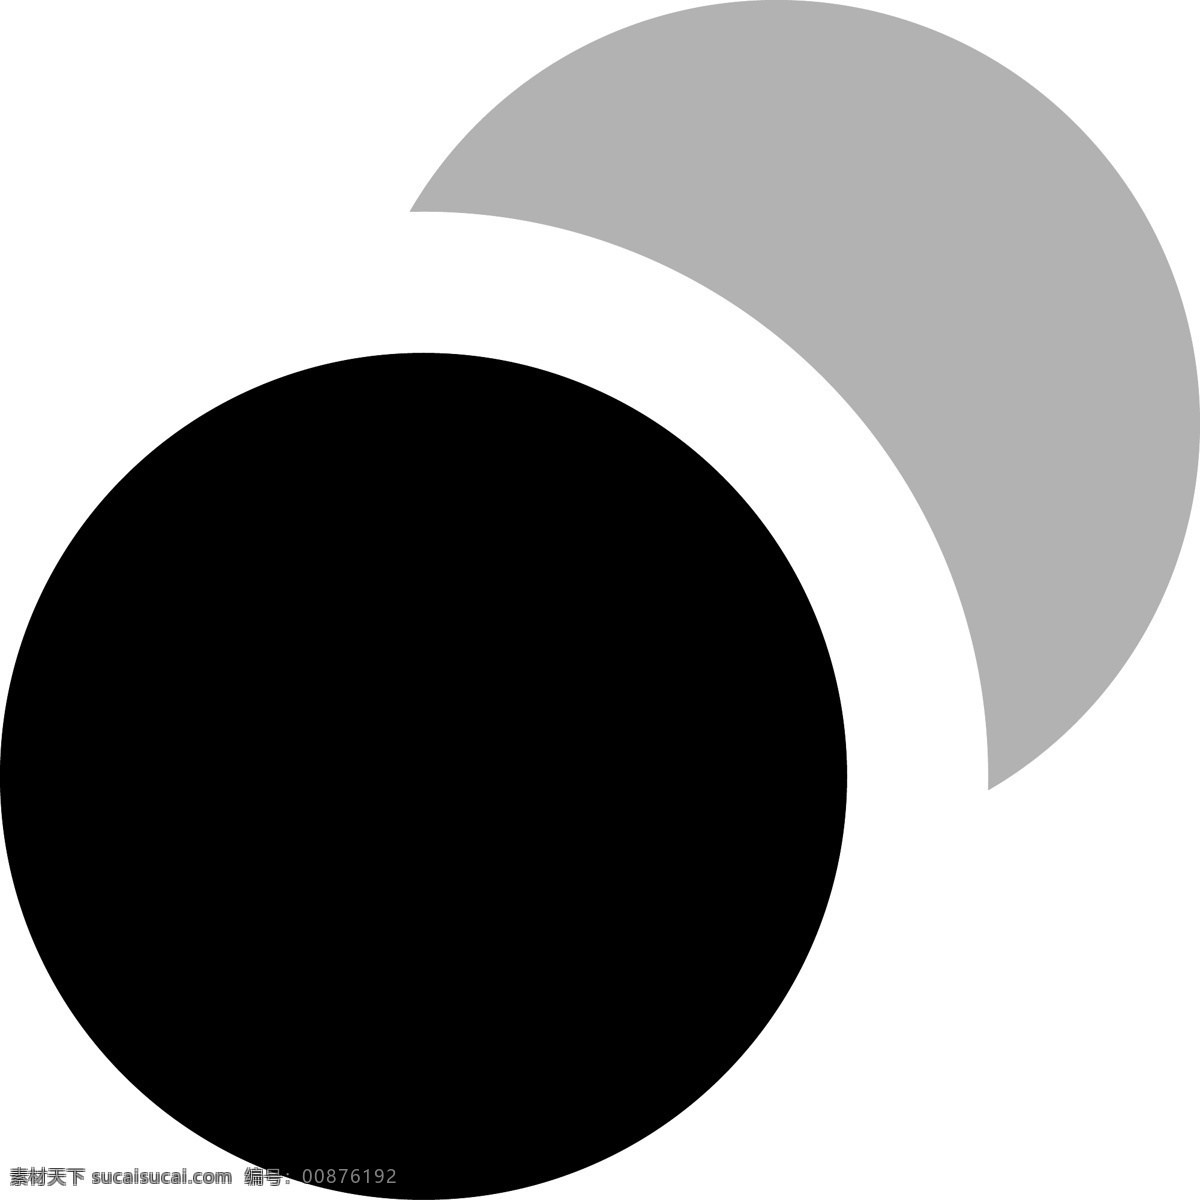 卡通 黑 灰色 圆形 半圆形 符号 图标 ui图标 ppt图标 倒影 应用图标 微信图标 标志图标 半圆形符号